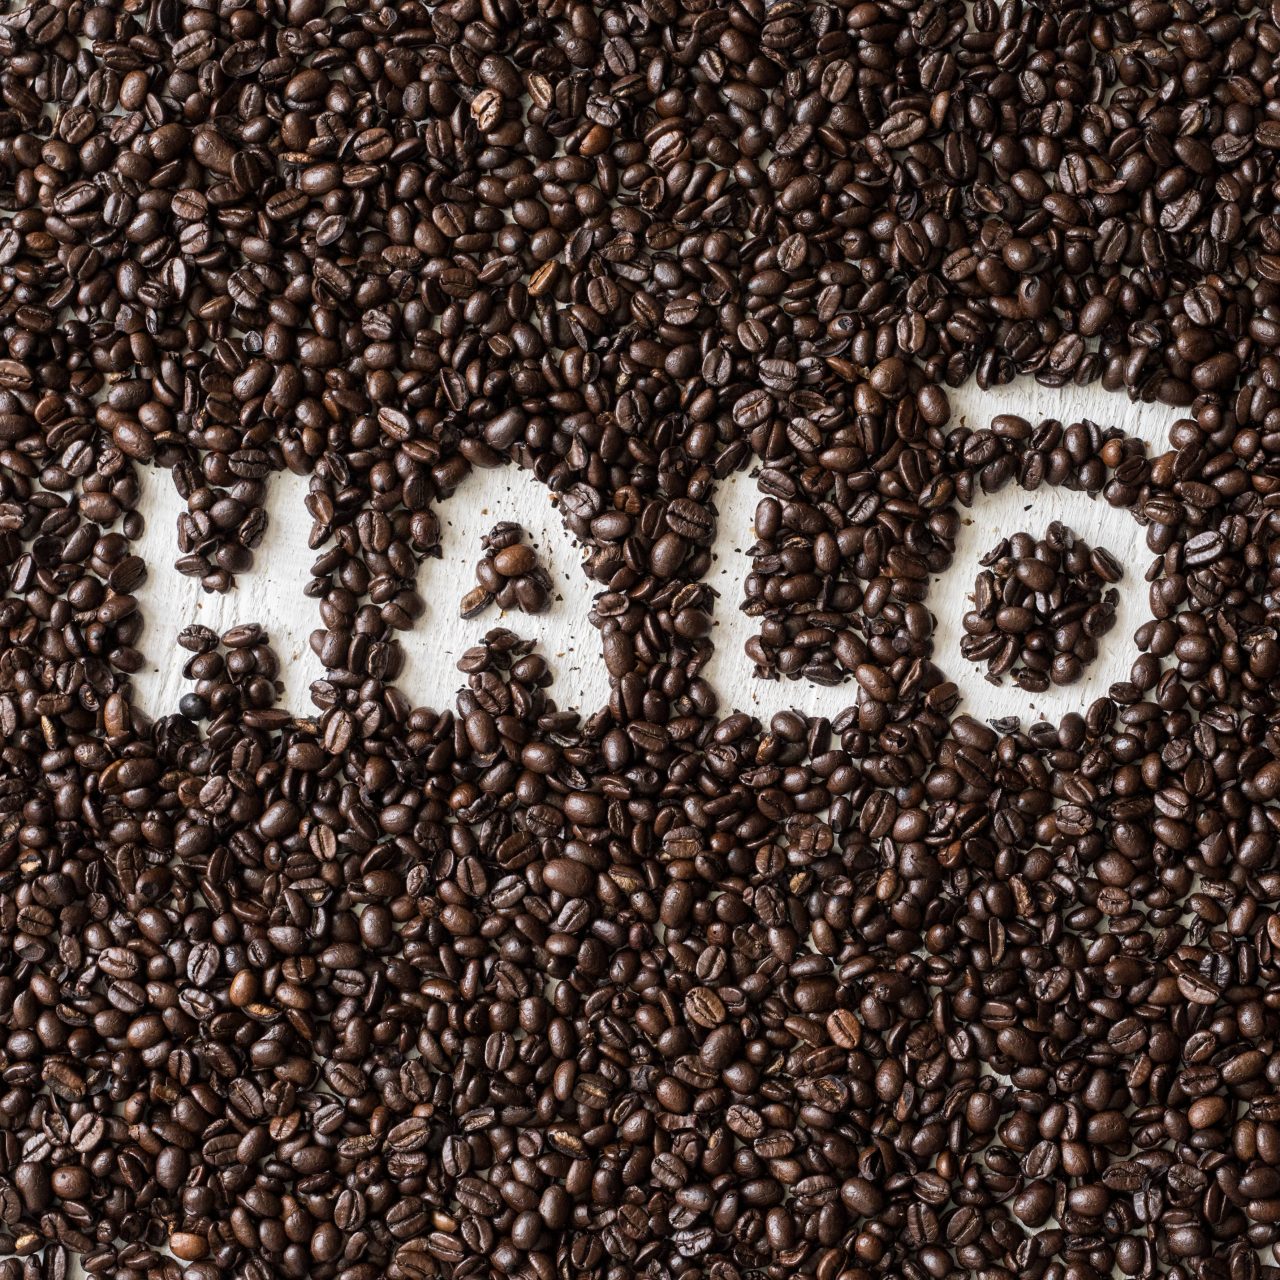 Halo Coffee